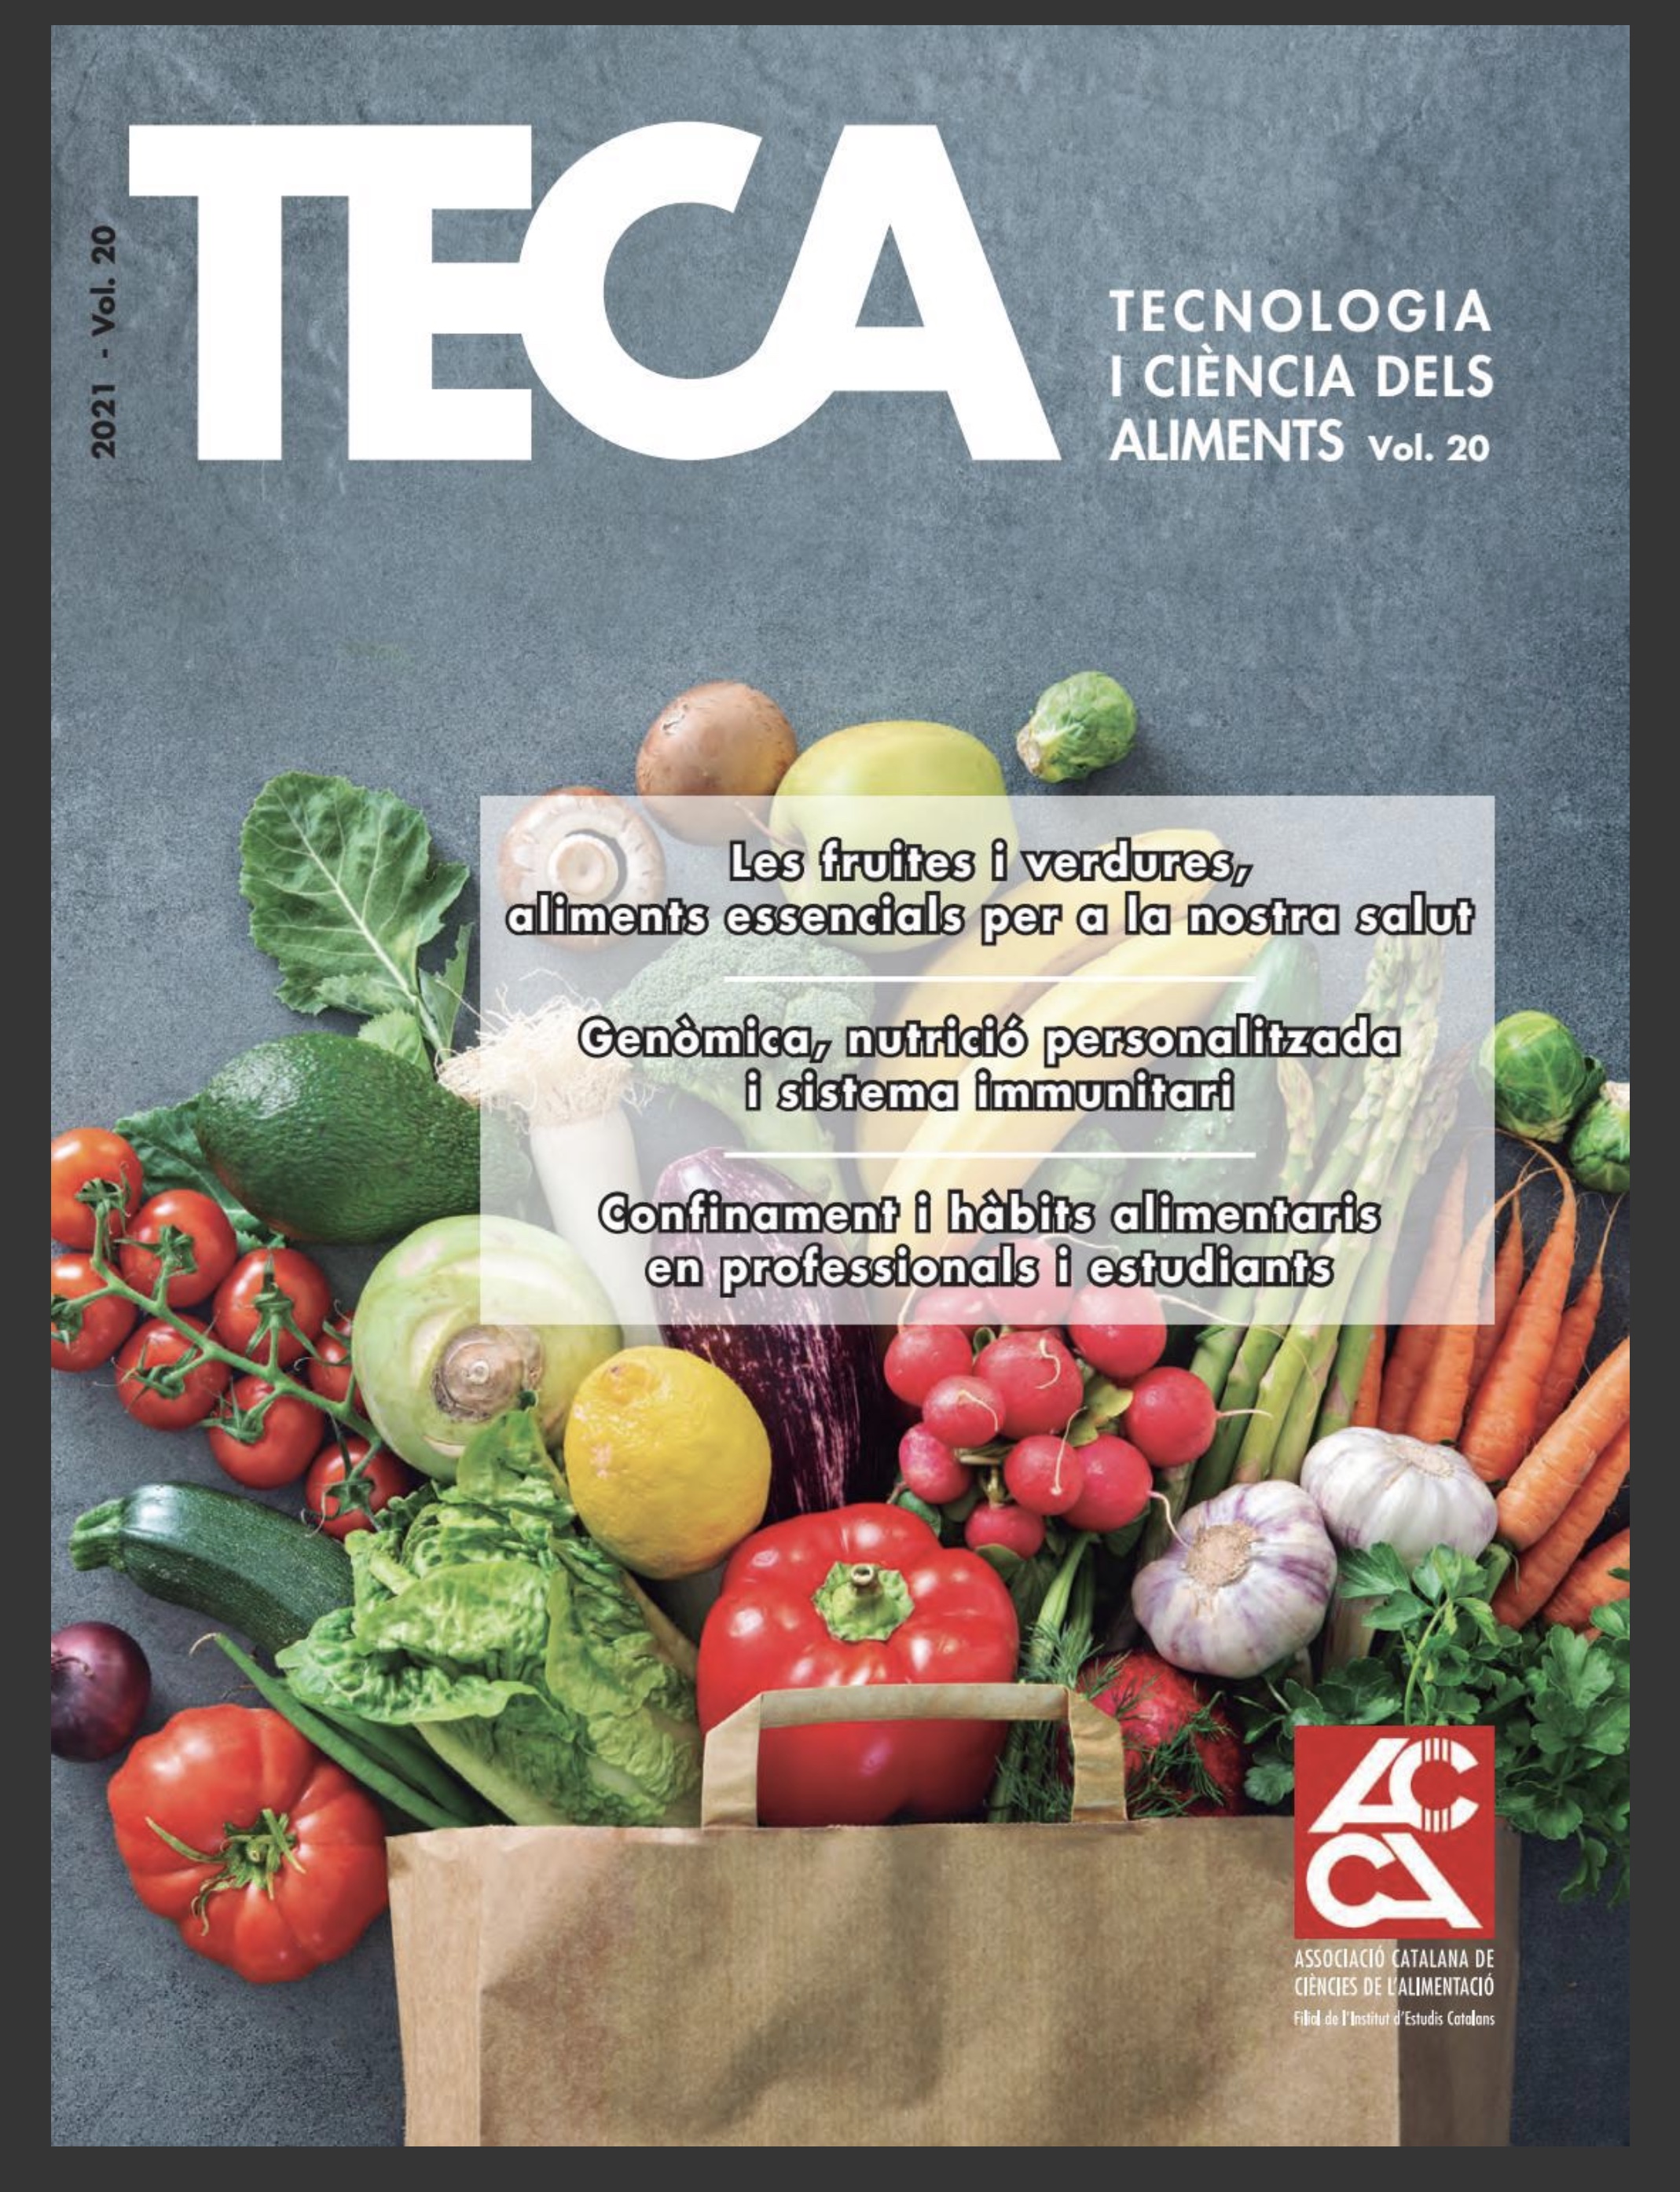 L’última revista TECA ja és accessible a la web!